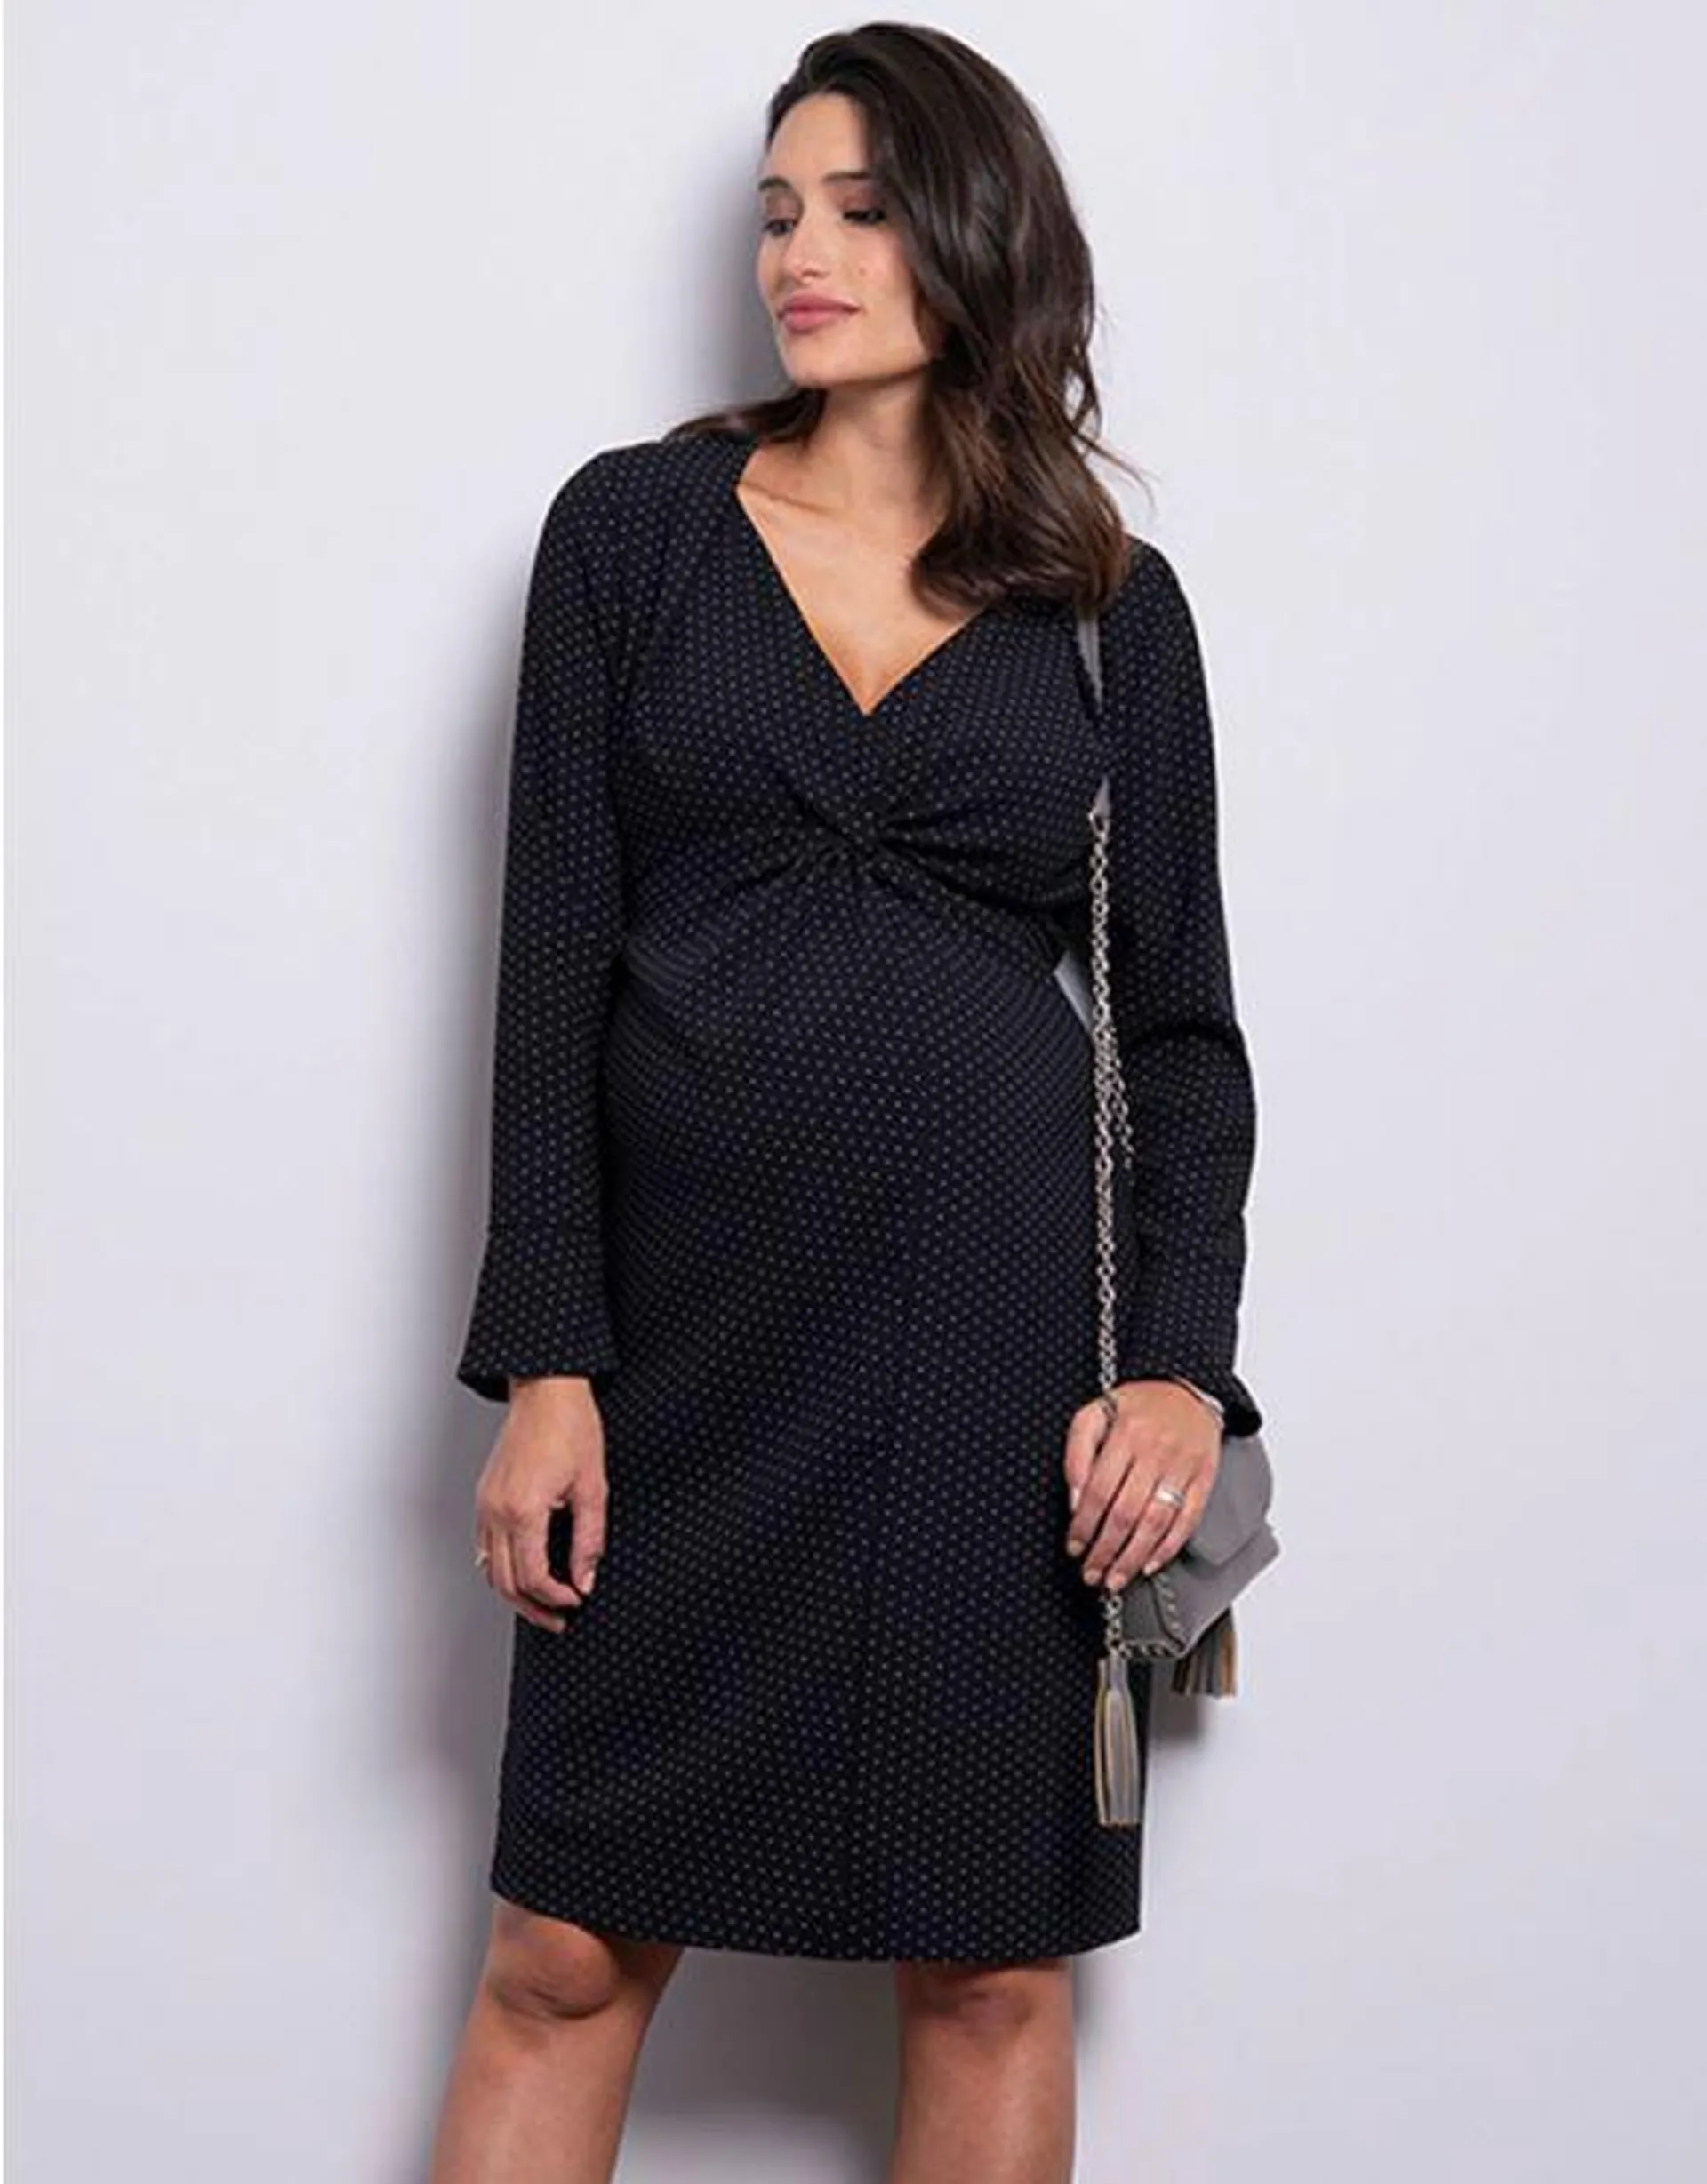 Black Polka Dot Twist Maternity Dress